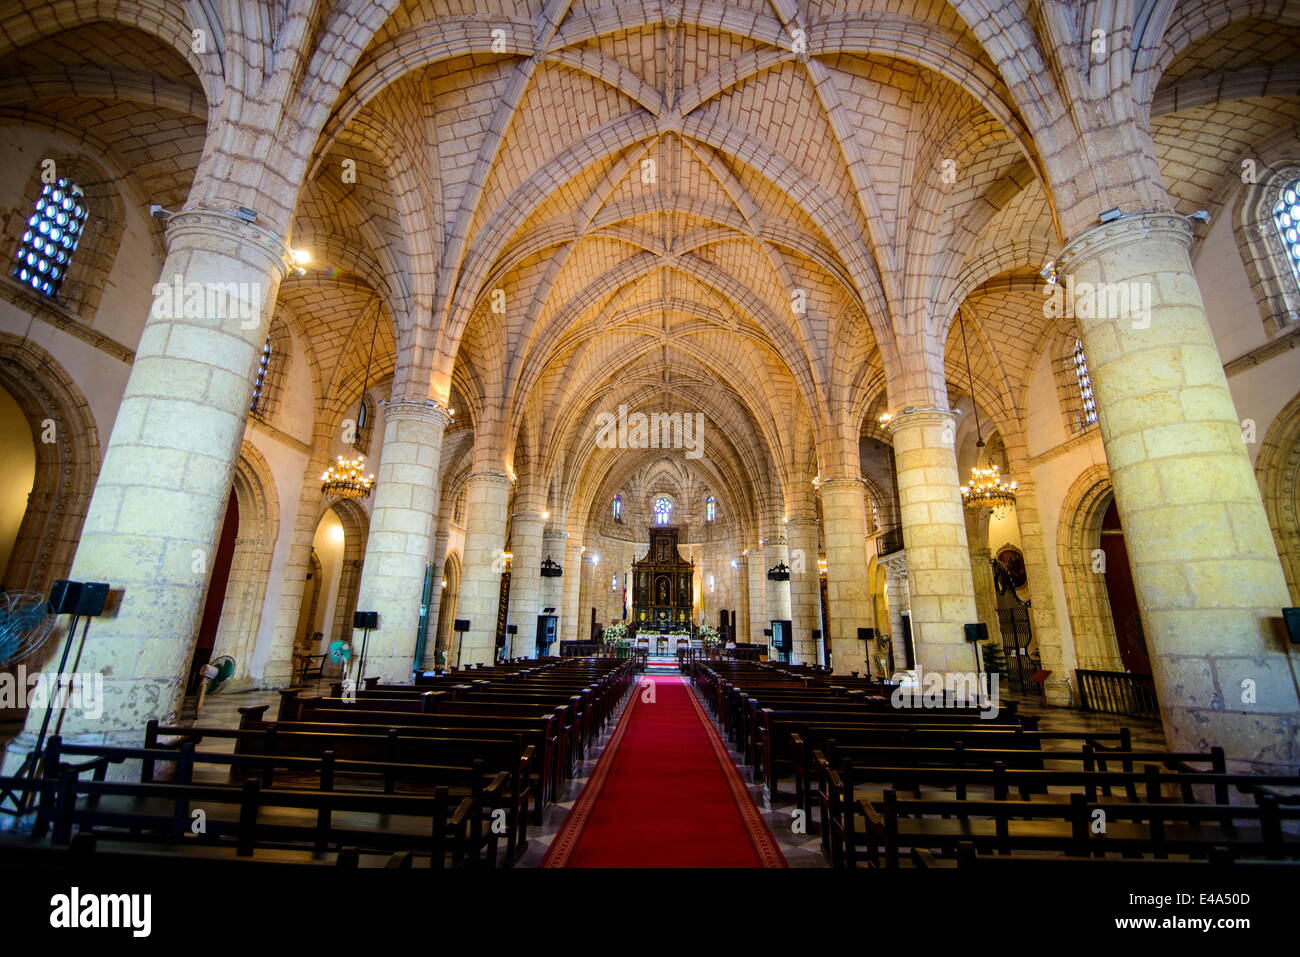 Innenraum der Kathedrale Primada de América, Altstadt, UNESCO, Santo Domingo, Dominikanische Republik, West Indies, Karibik Stockfoto